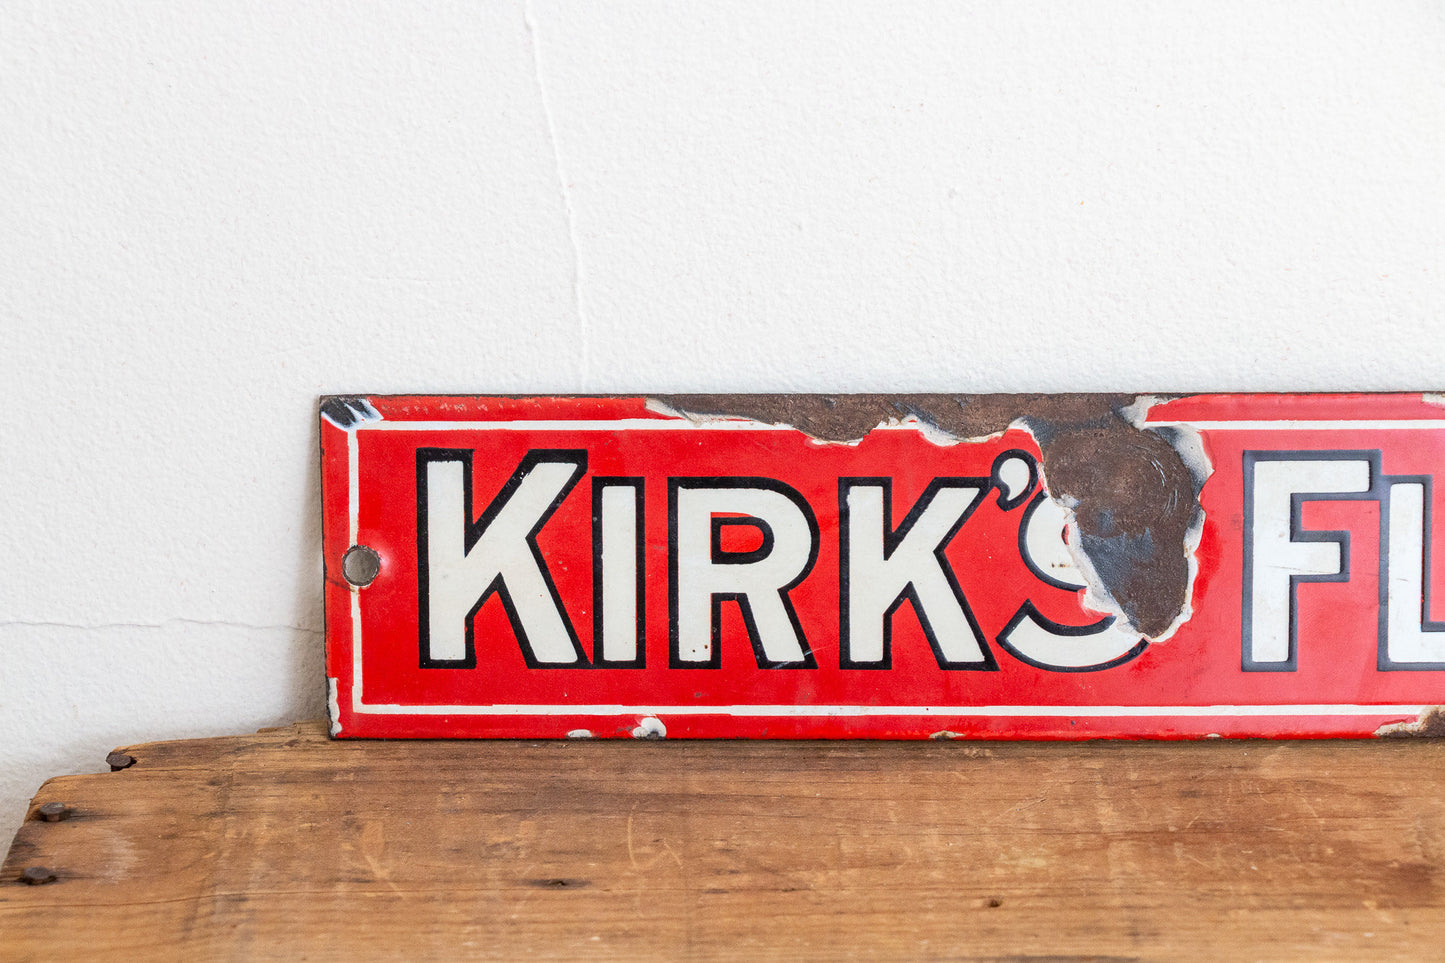 Kirk's Flake Soap Sign Vintage Red Porcelain Bathroom Decor - Eagle's Eye Finds